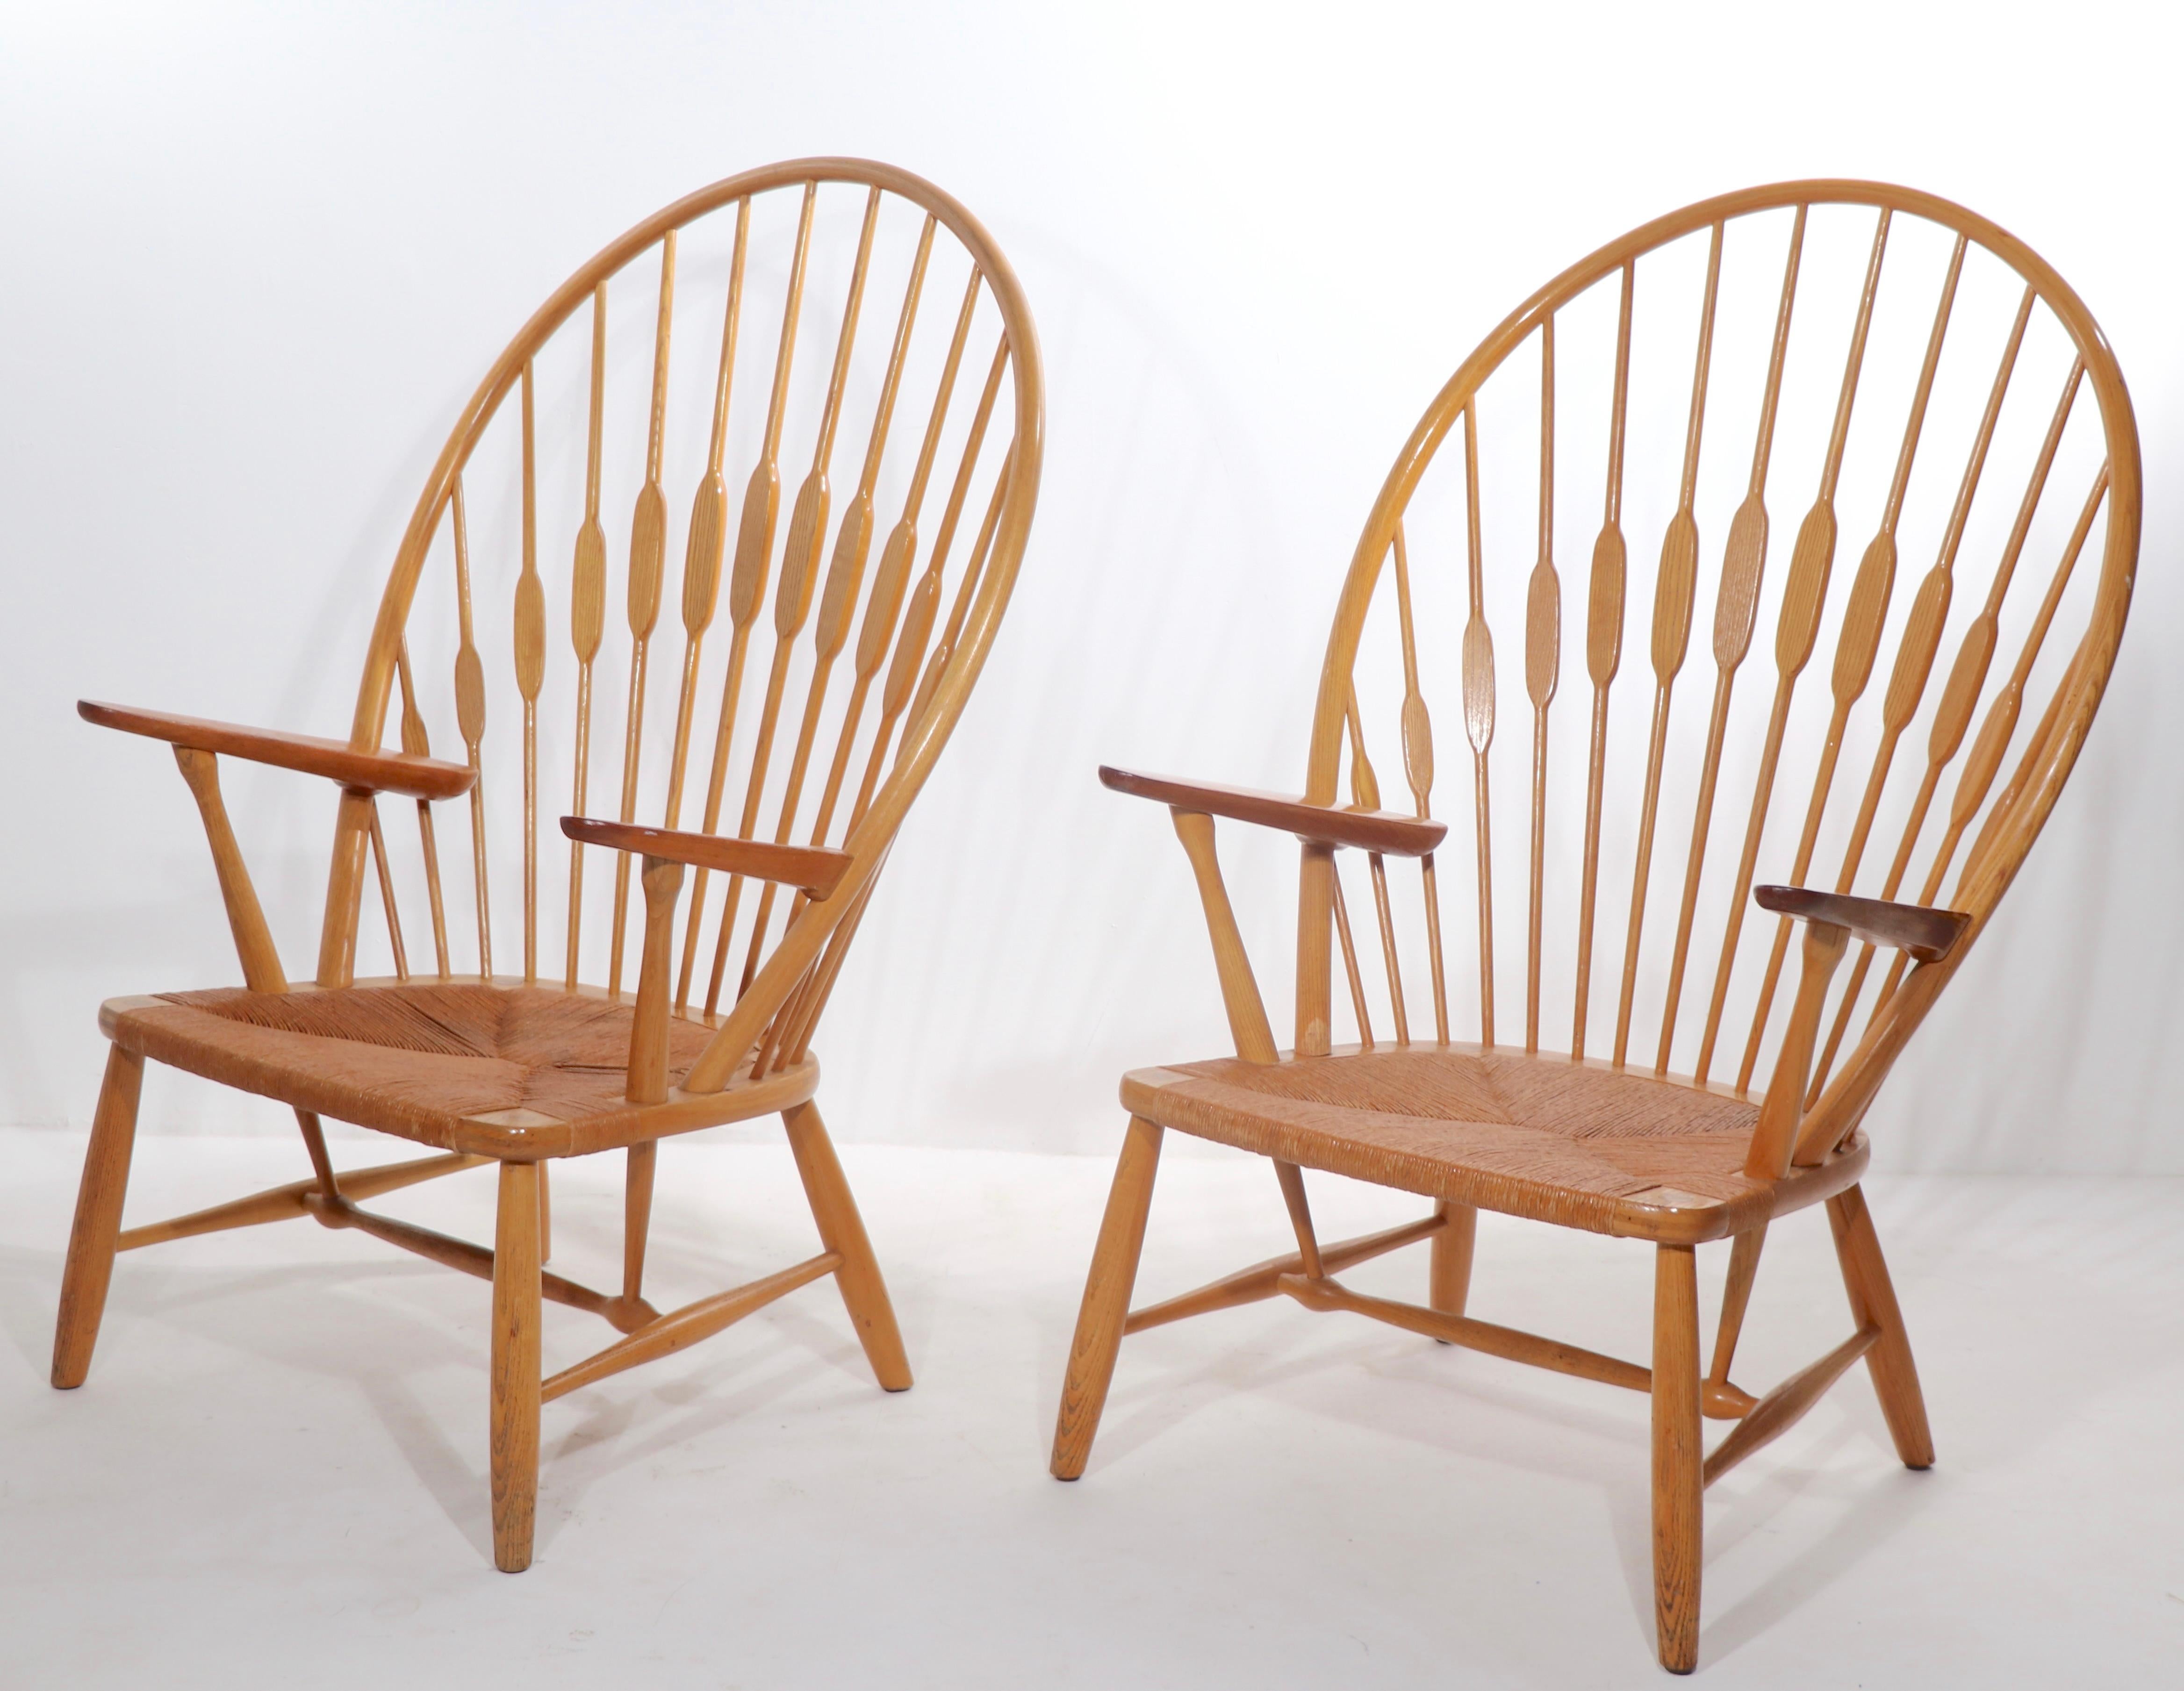 Paire iconique de chefs-d'œuvre de la modernité danoise, les chaises Peacock, conçues par Has Wegner et fabriquées par Johannes Hansen, Copenhague, Danemark, vers les années 1960. Construit en frêne et en teck, avec des sièges en carton d'origine.